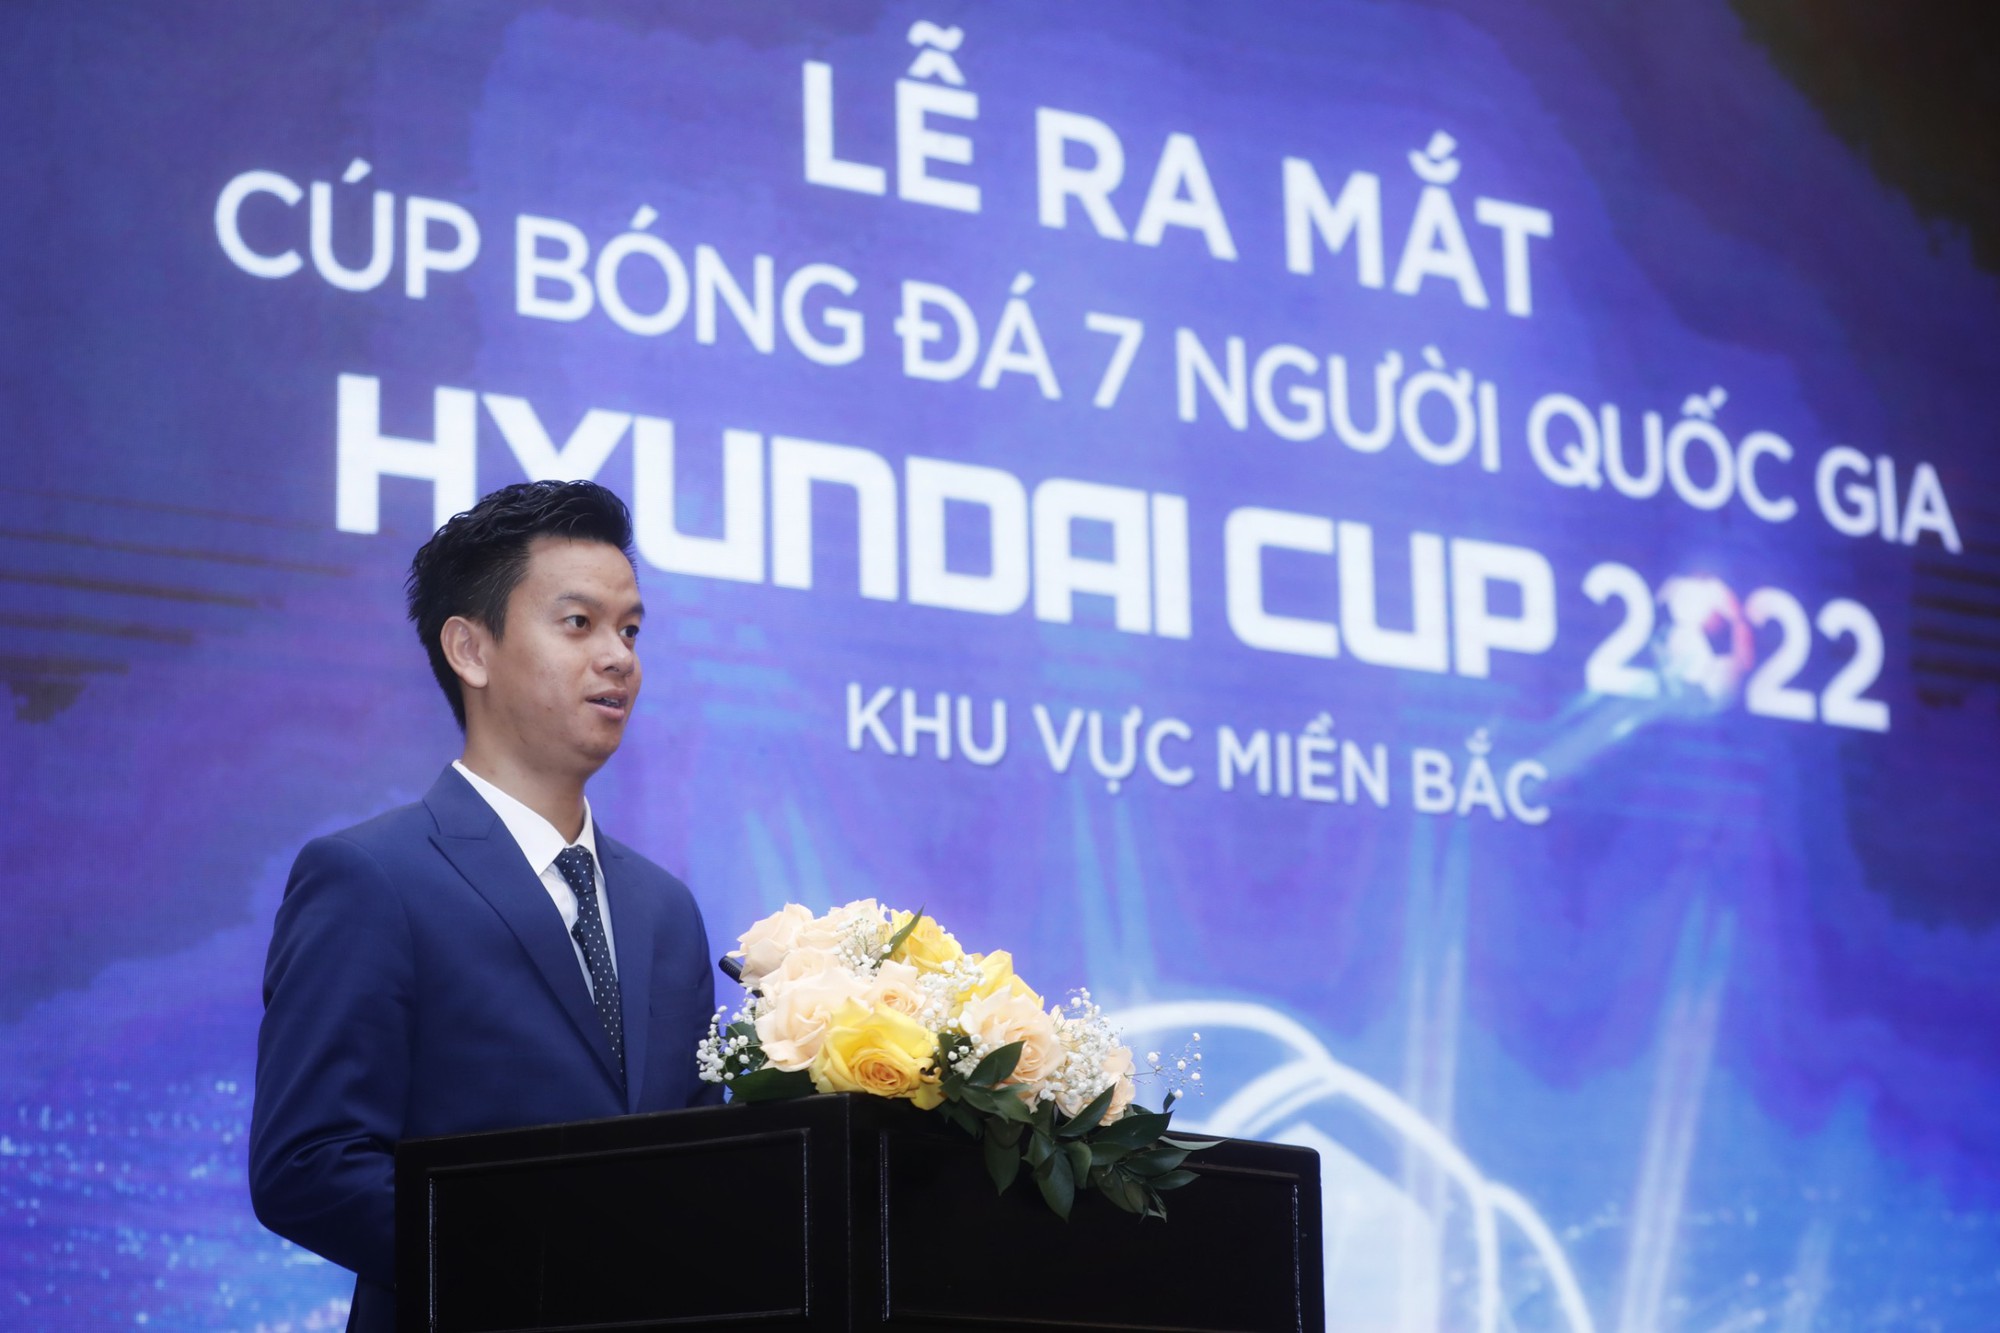 Cúp bóng đá 7 người quốc gia 2022: Chọn đội tuyển đấu Thái Lan - Ảnh 1.